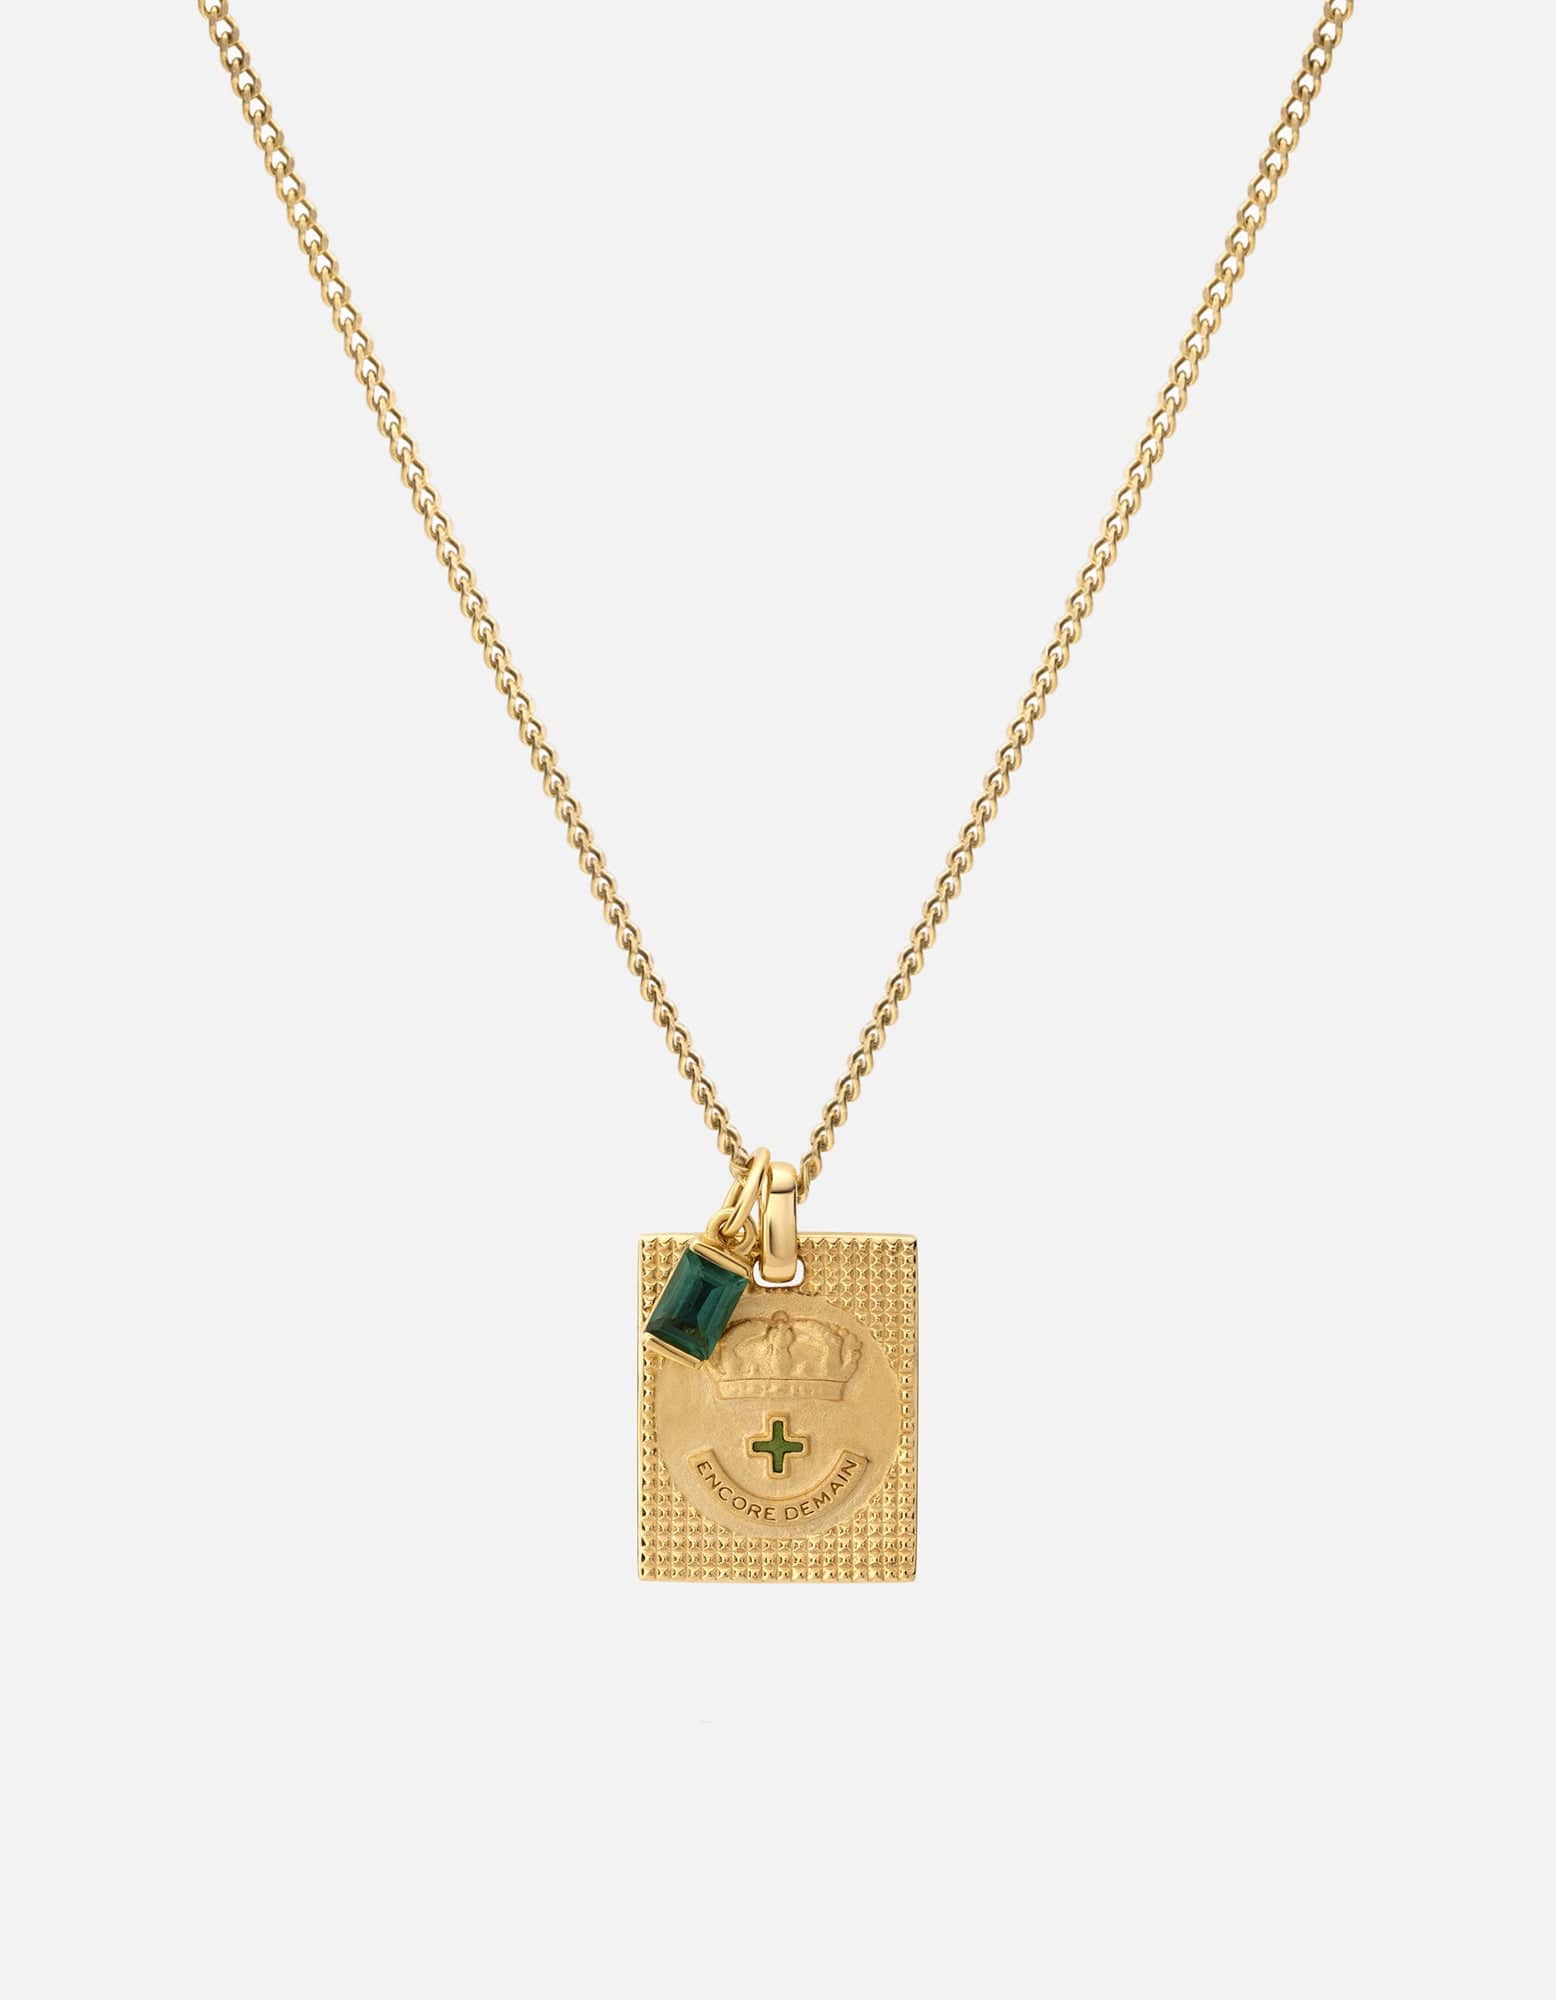 Miansai Men's Lineage Quartz Necklace, Gold Vermeil, Size 21 in.